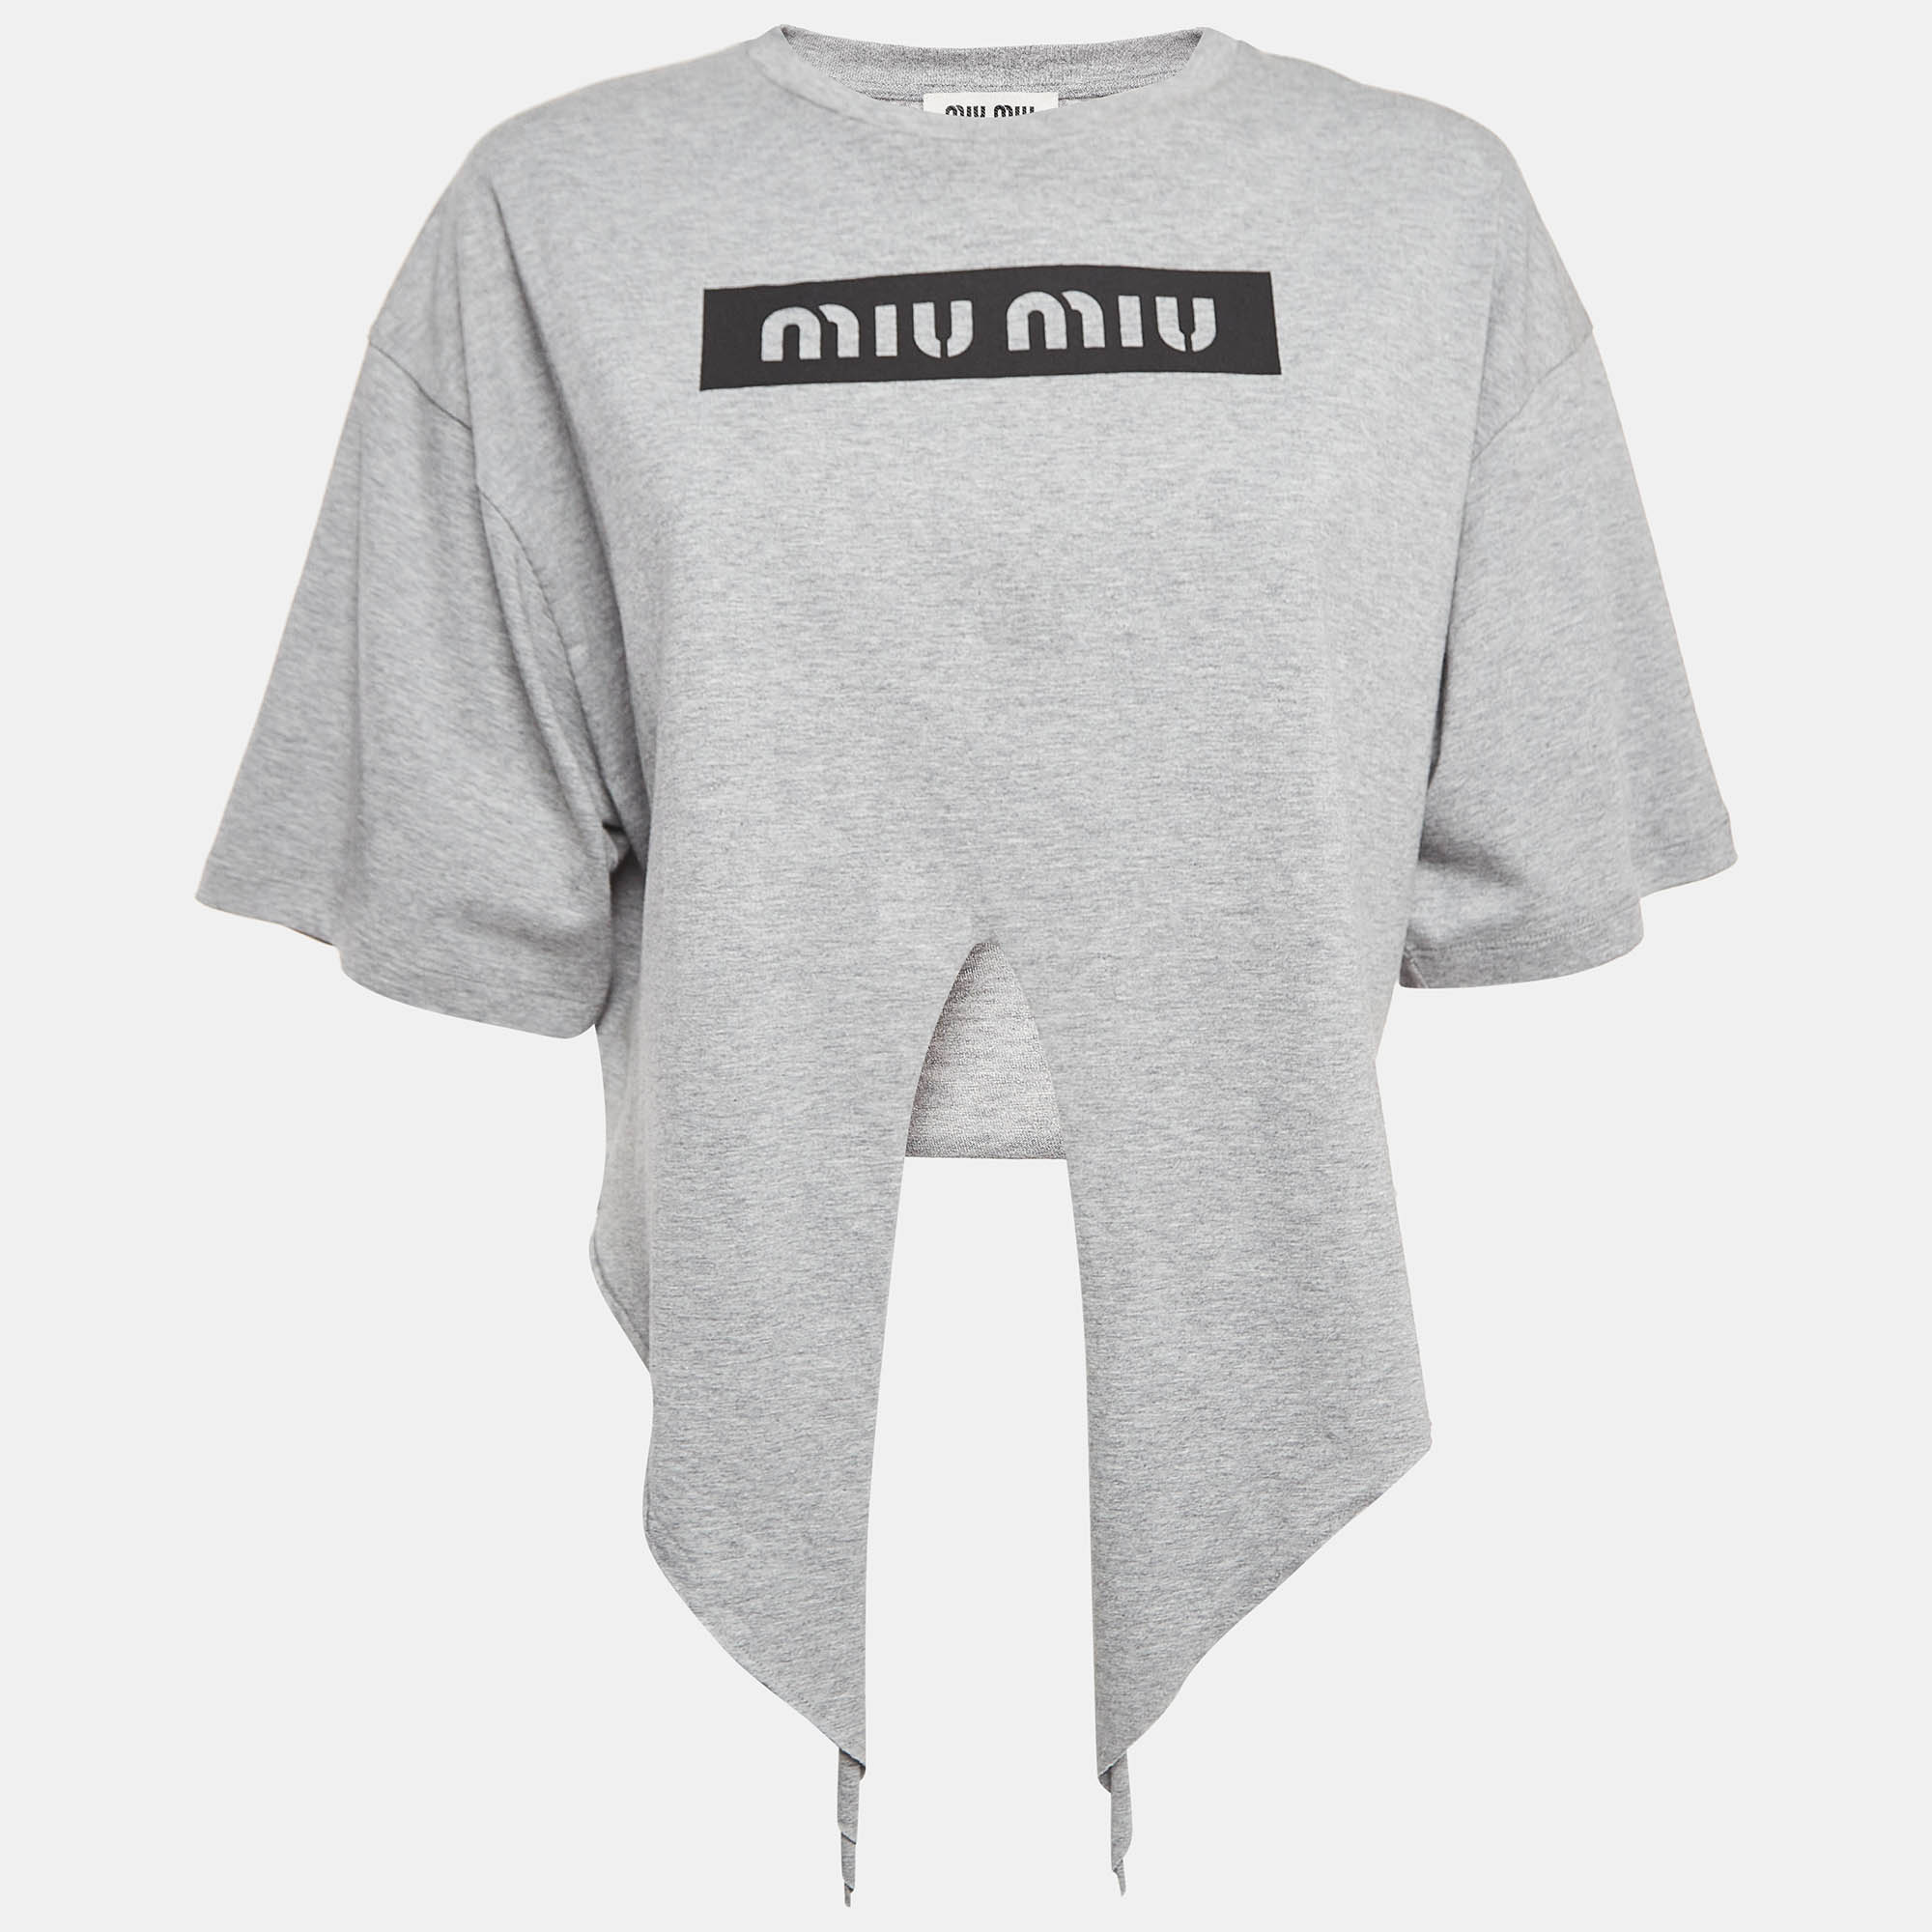 Miu miu grey logo print cotton knotted crop top m